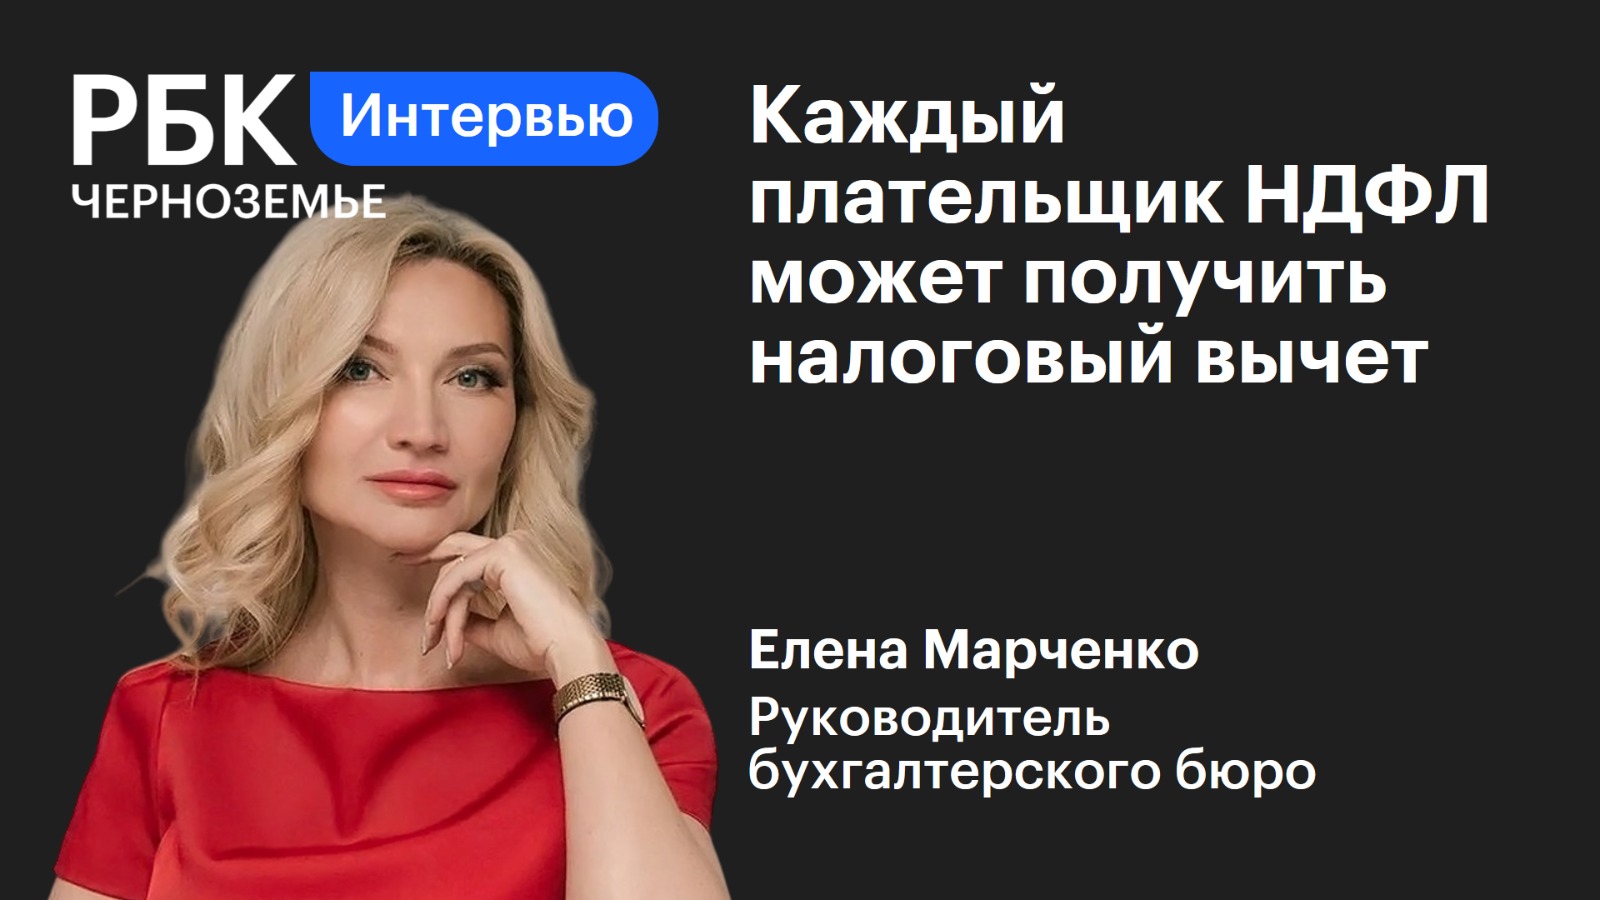 Елена Марченко: «Каждый плательщик НДФЛ может получить налоговый вычет»